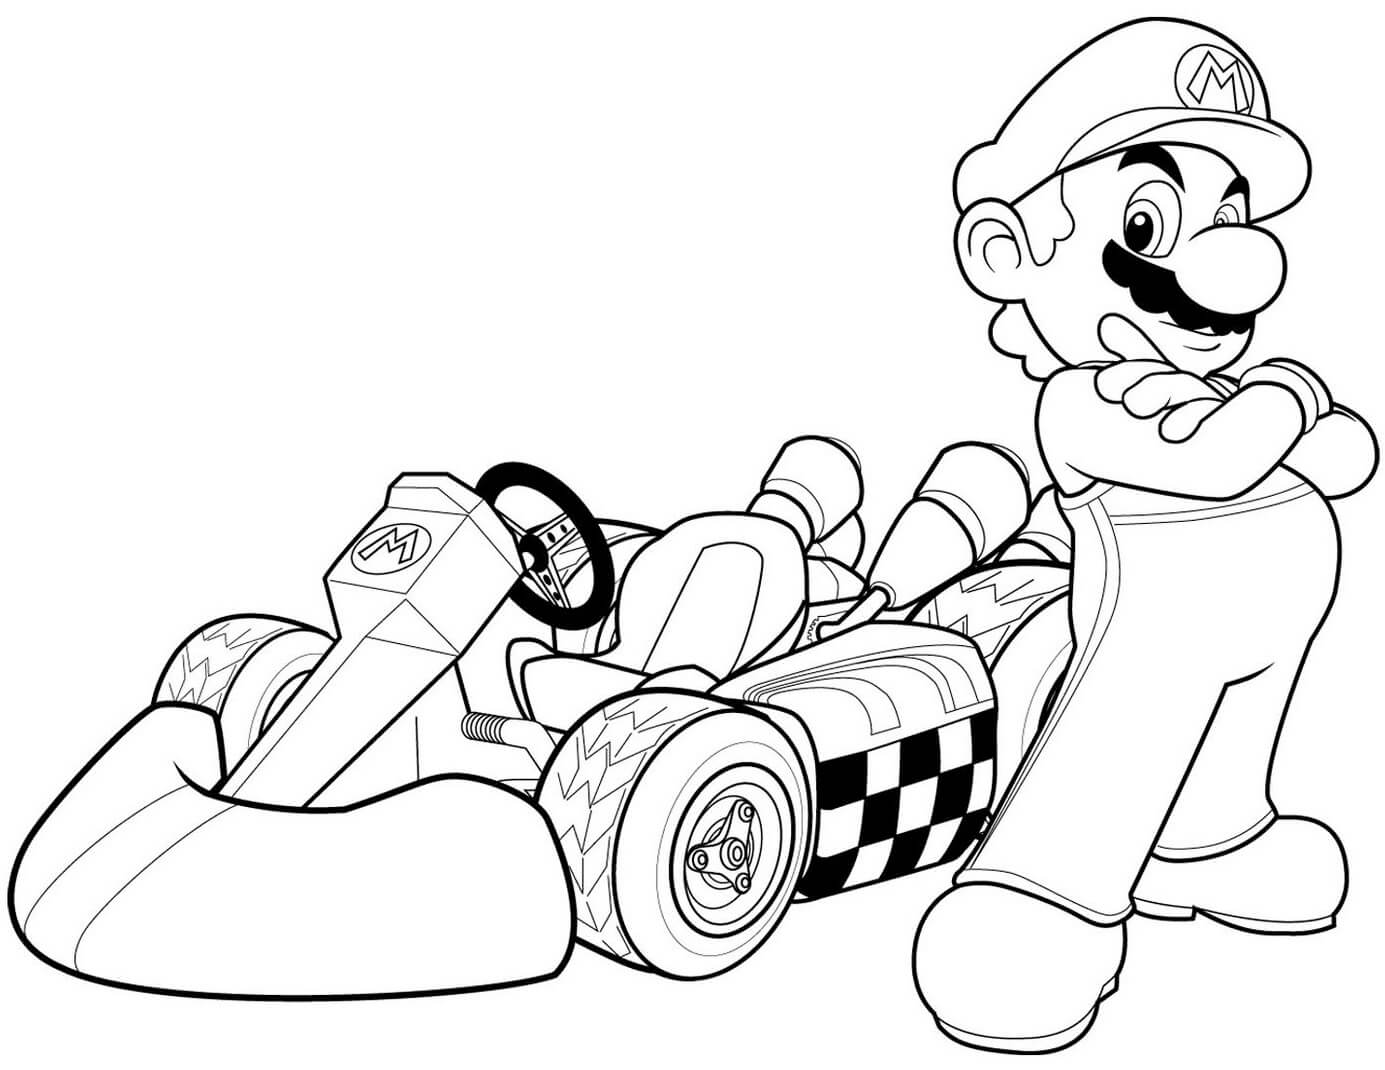 Dibujos de Mario en Mario Kart Wii para colorear